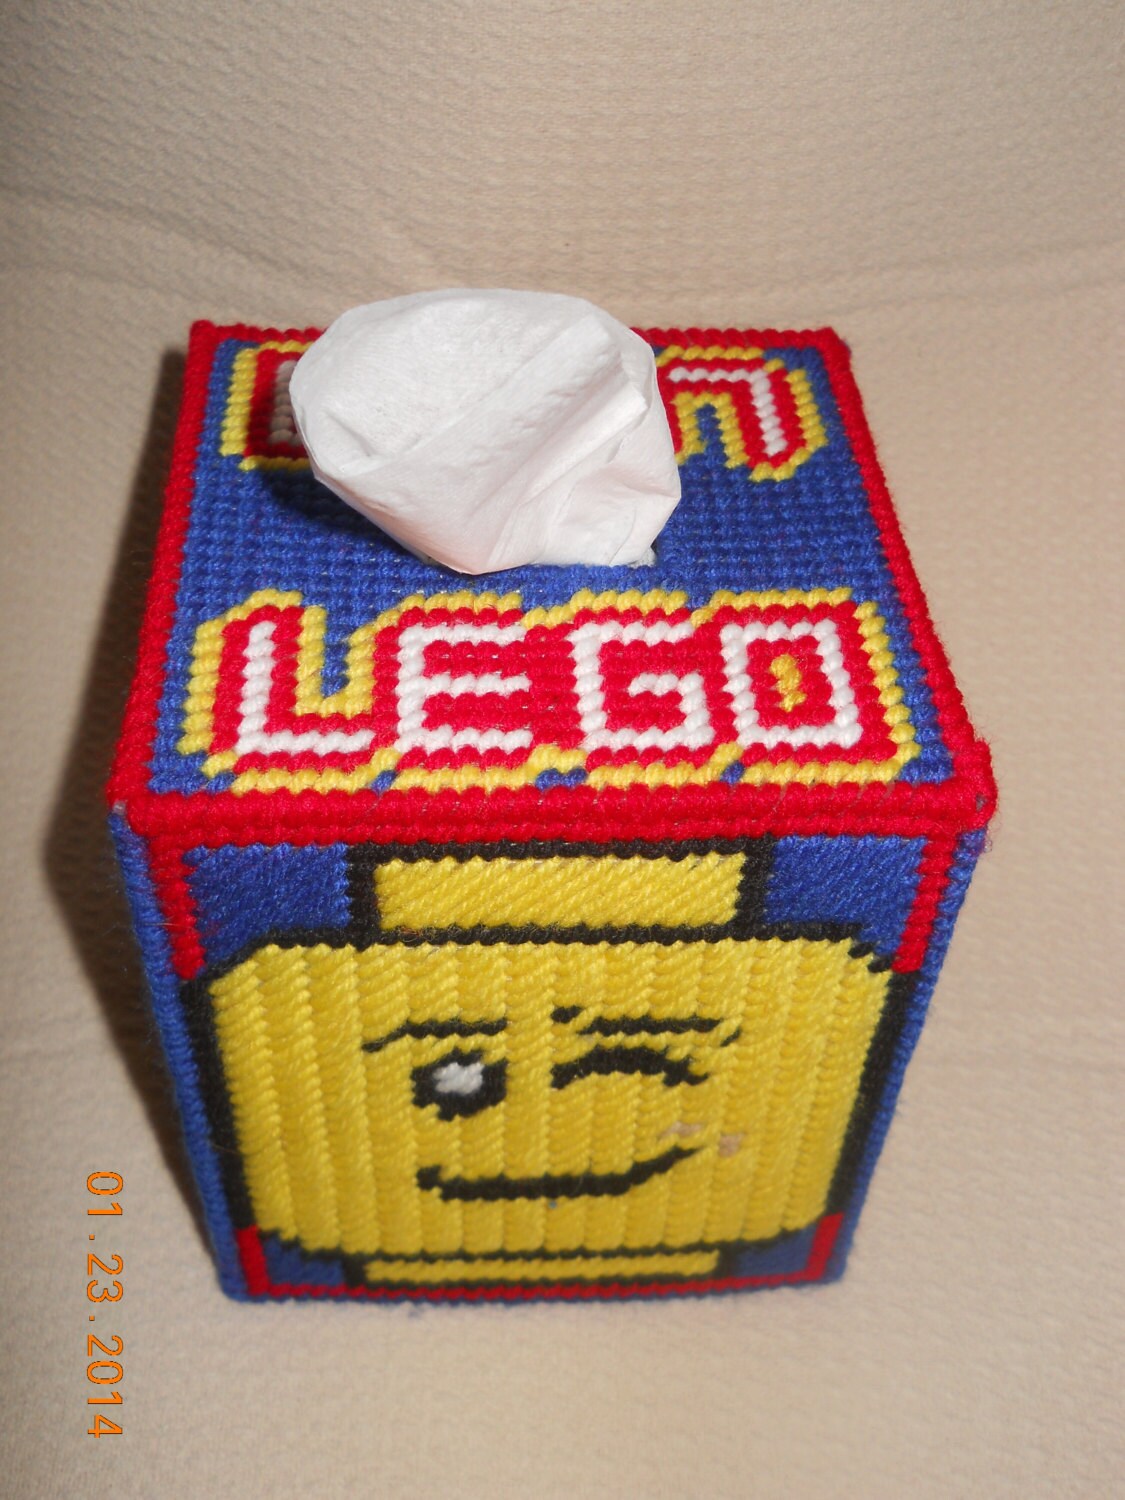 Lego Tissue box cover in Plastic canvas